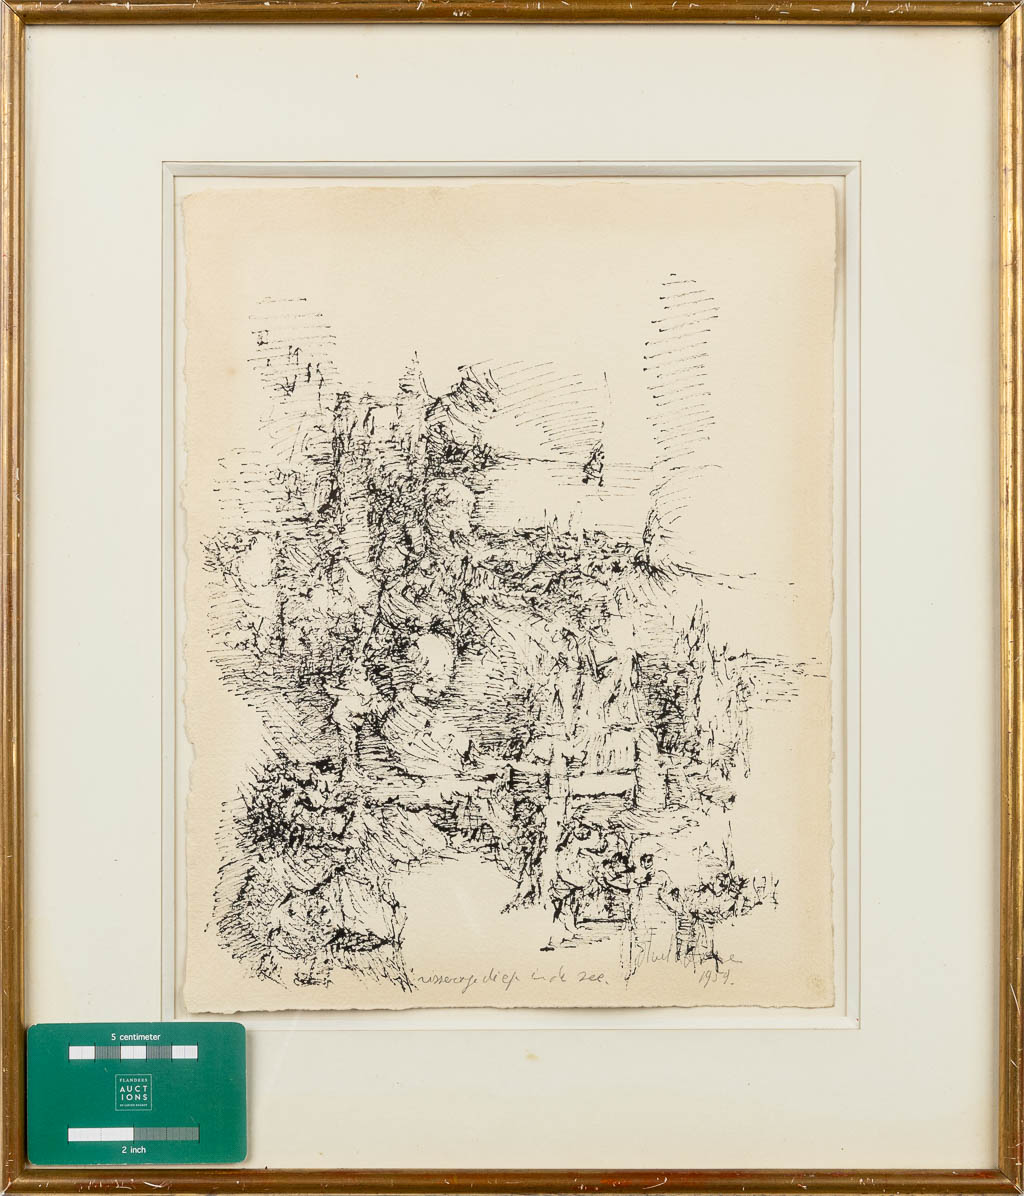 Roel D'HAESE (1921-1996) 'Vissertje diep in de zee' een tekening op papier, 1959 (25,5 x 32 cm)